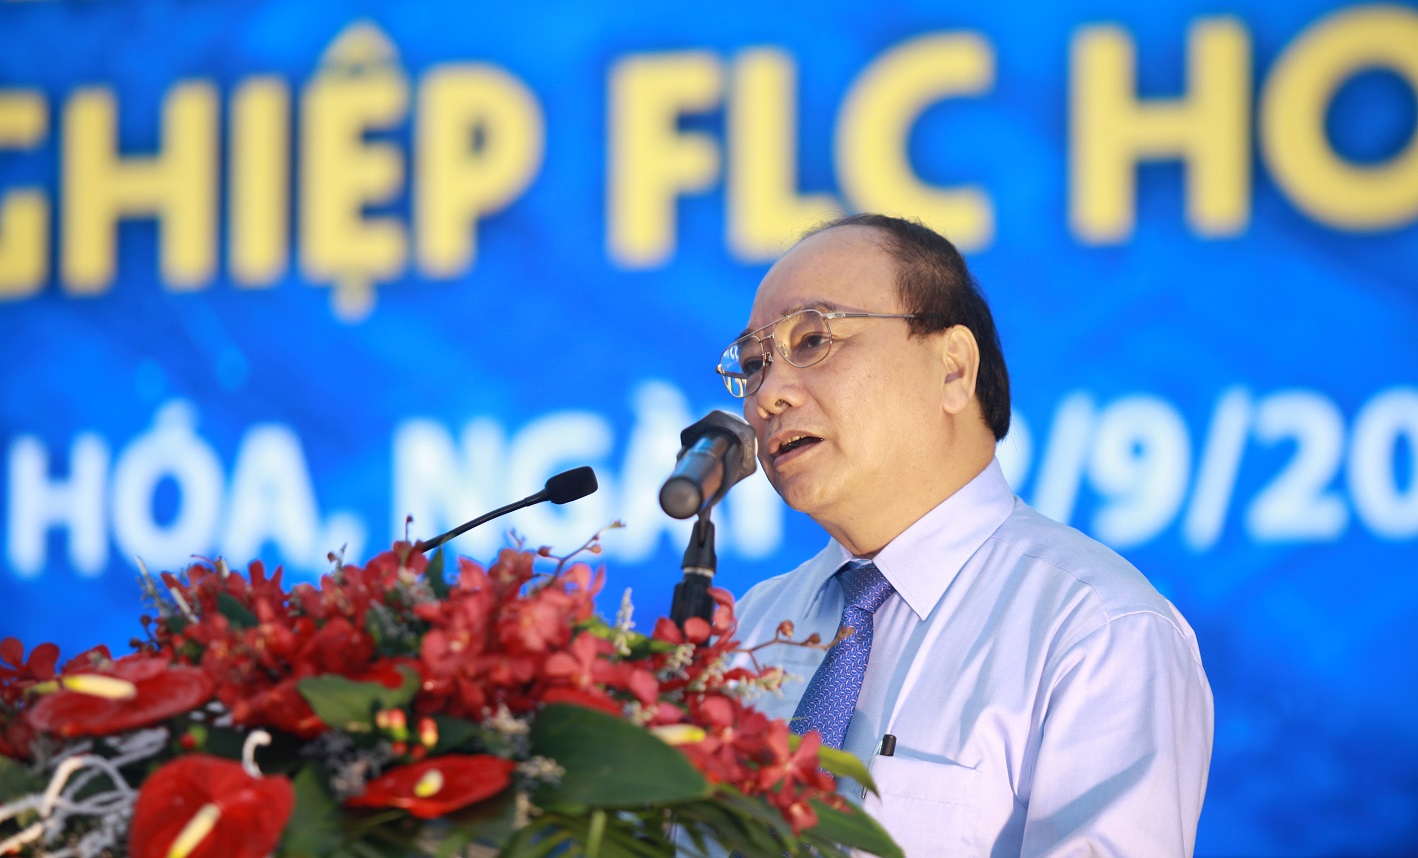 Phó Thủ tướng Nguyễn Xuân Phúc dự Lễ khởi công Khu công nghiệp kiểu mẫu FLC Hoàng Long